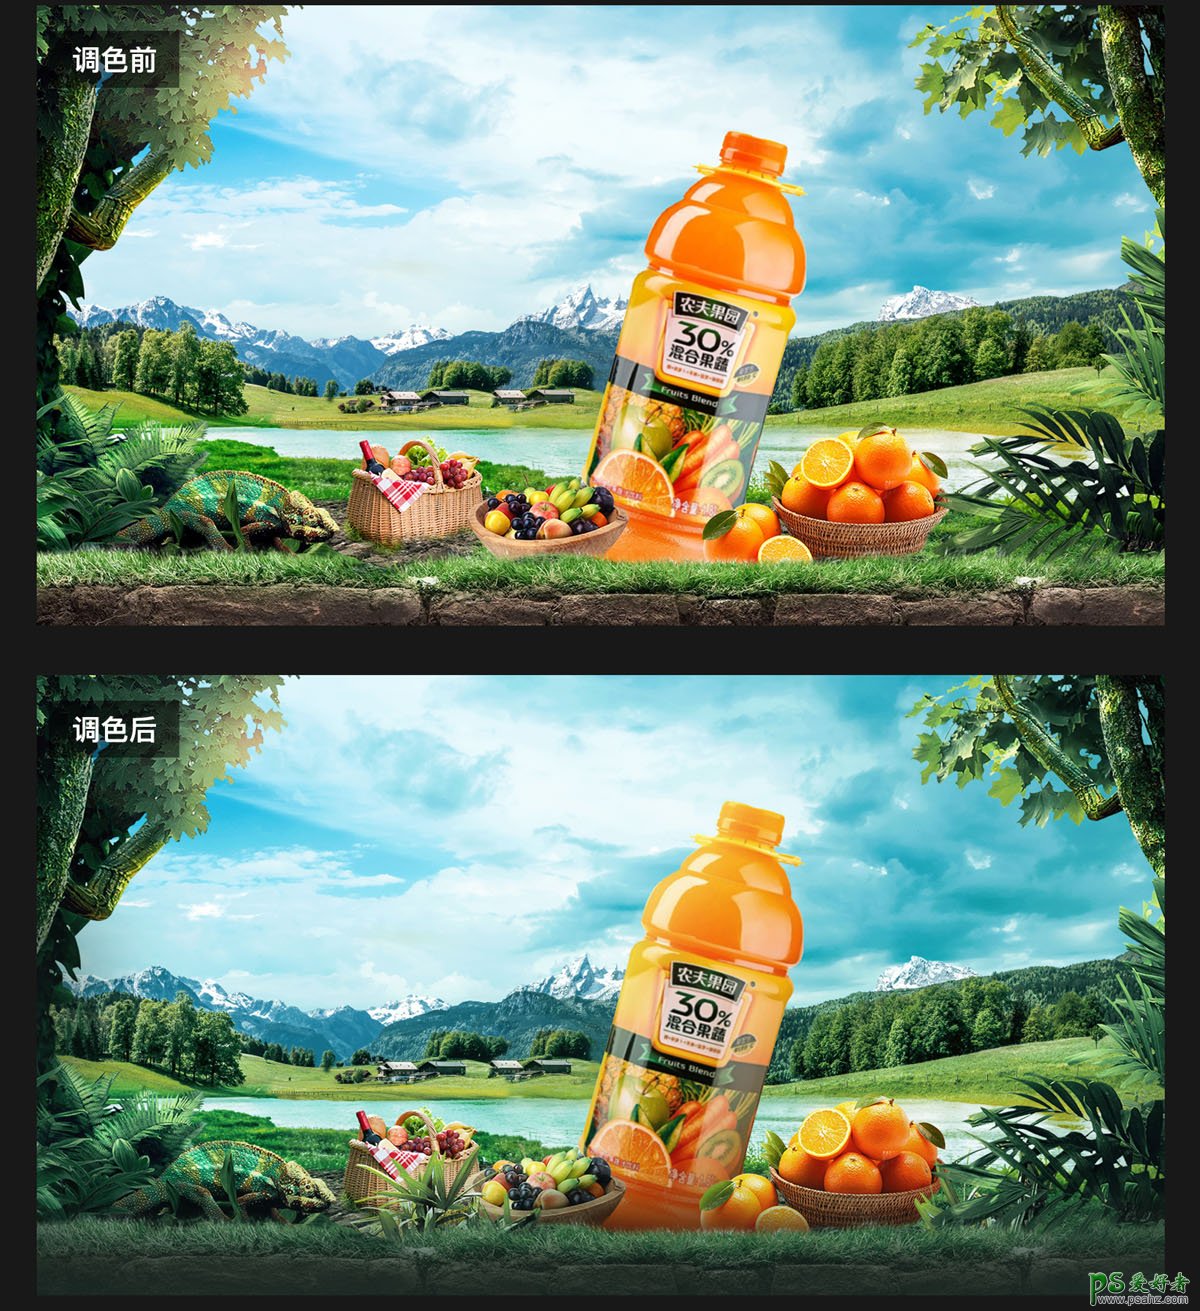 PS海报设计教程：创意制作原生态果汁饮料海报，果汁宣传广告设计